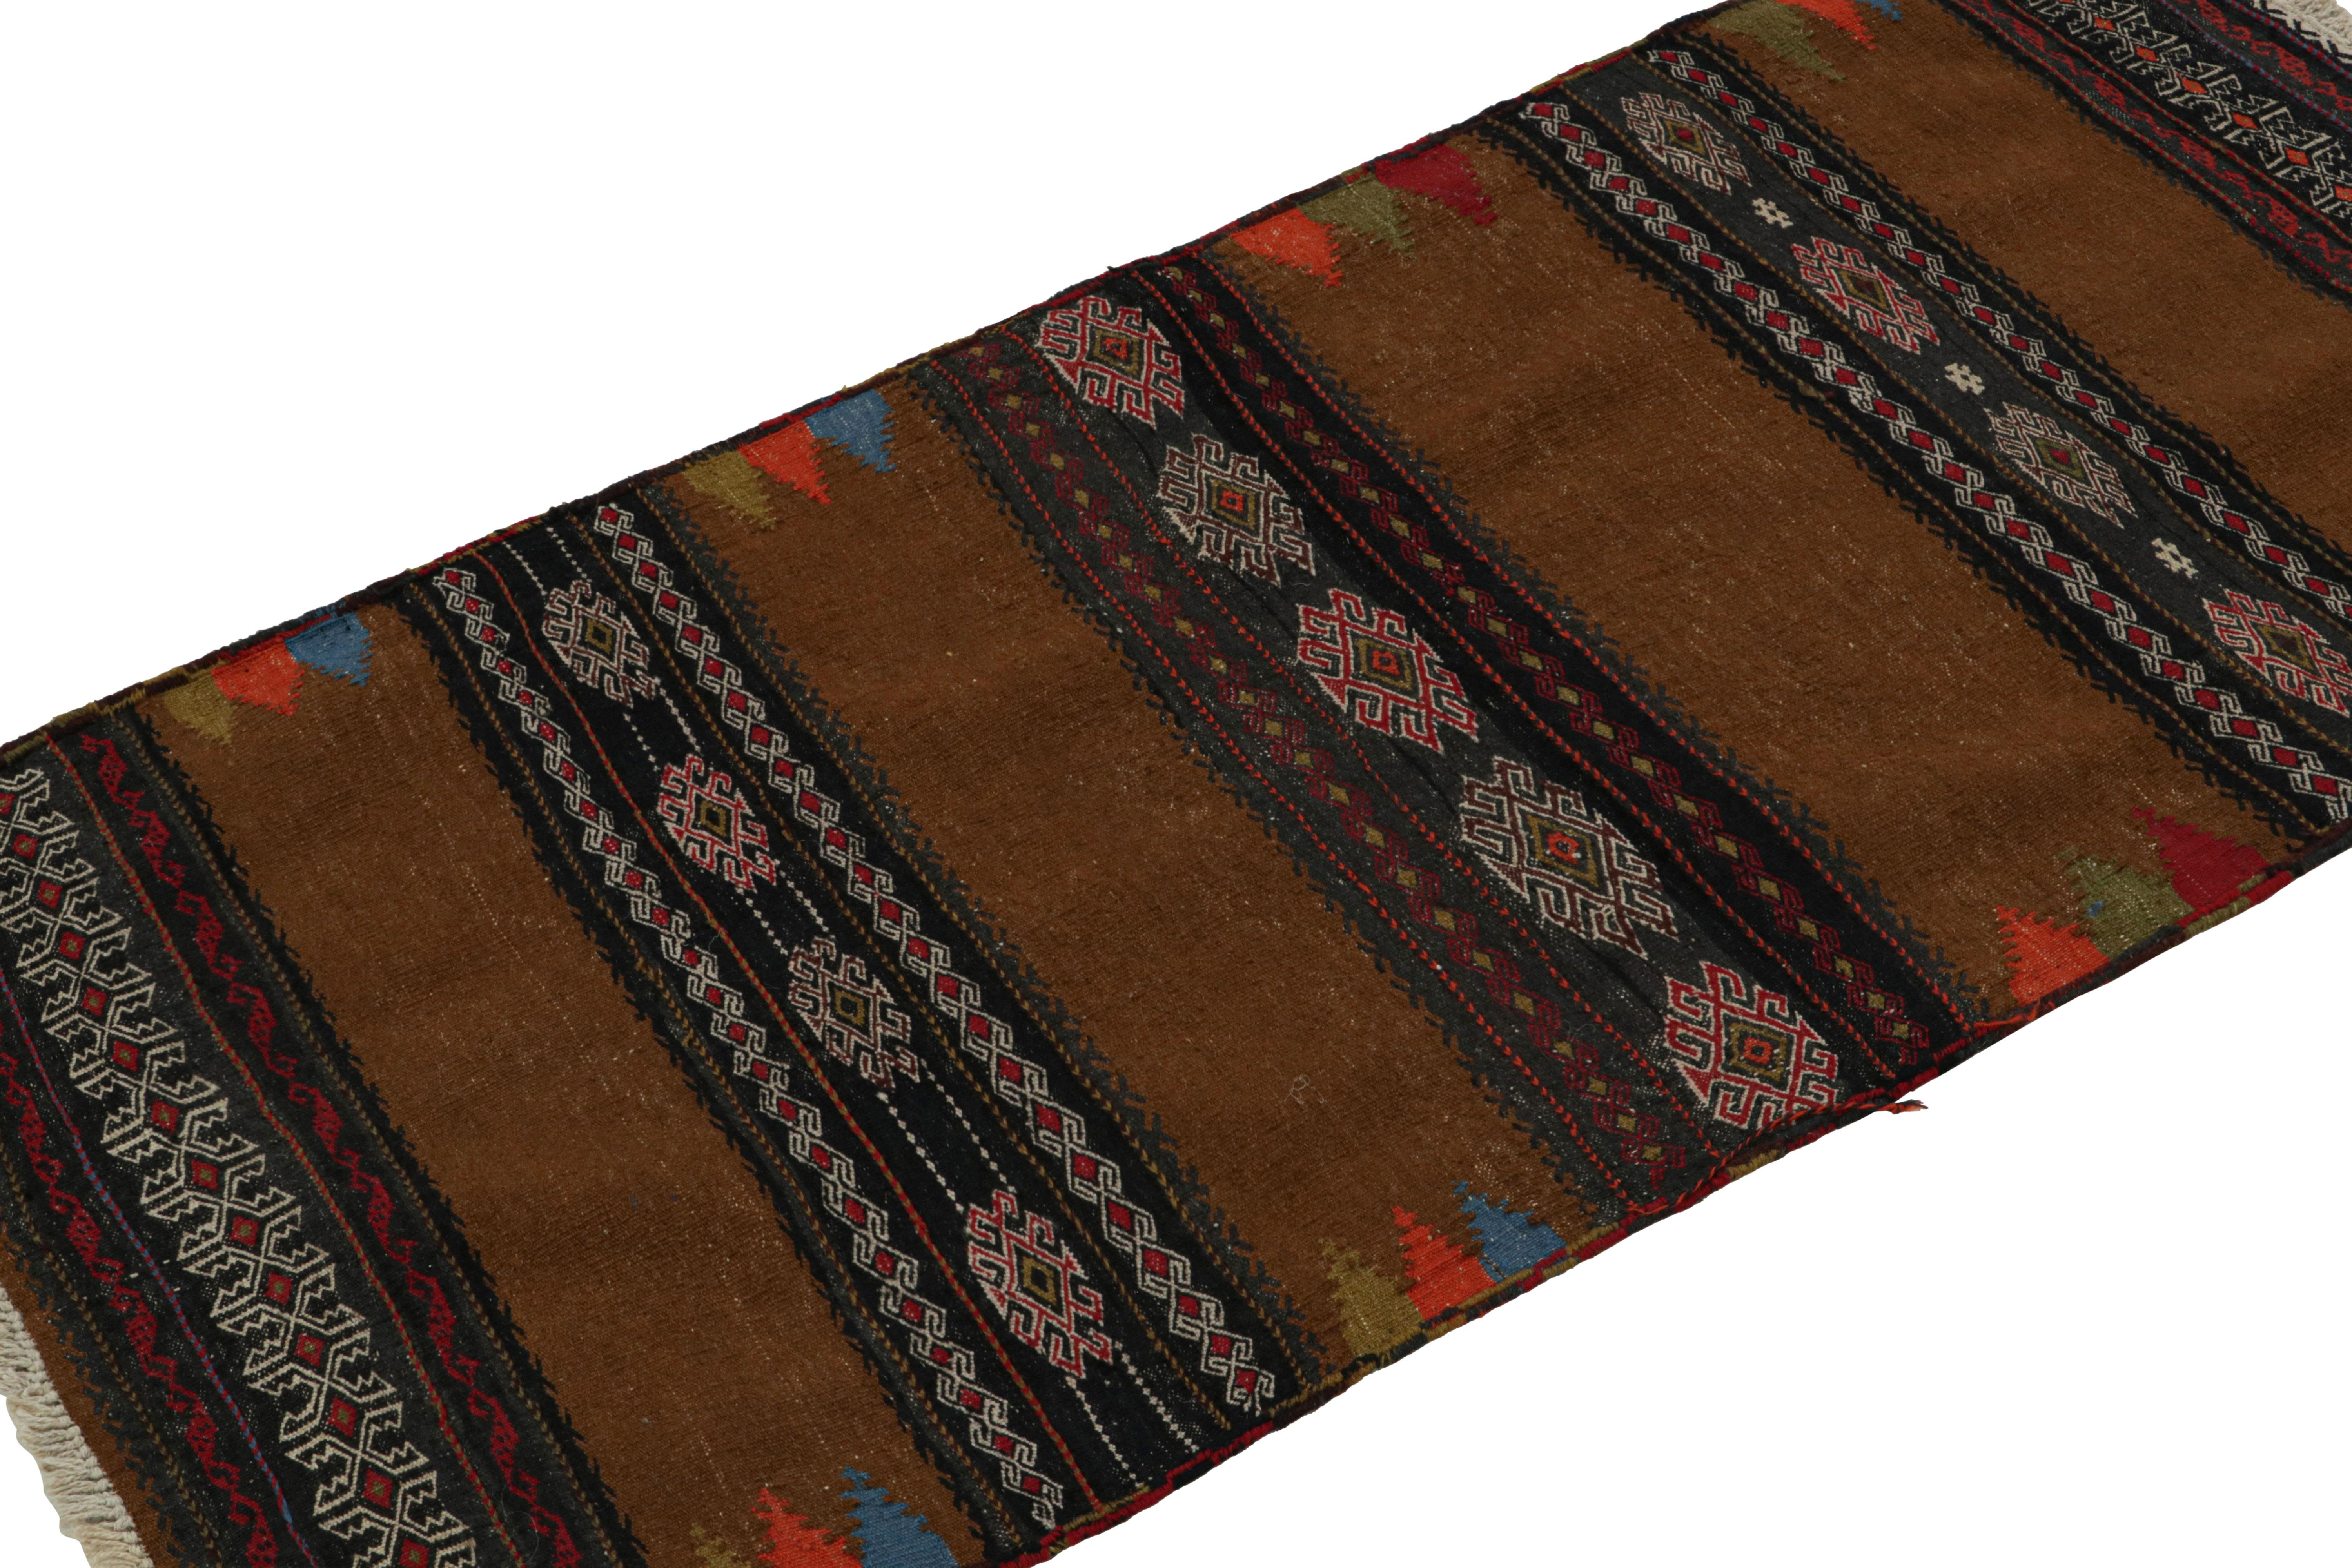 Dieser handgewebte afghanische 2x5-Stammeskelim aus der Zeit um 1950-1960 ist eine exquisite Ergänzung der Rug & Kilim-Kollektion im Stammesstil.  

Über das Design: 

Dieses archaische Kunstwerk mit althergebrachtem Charme, das auf afghanische